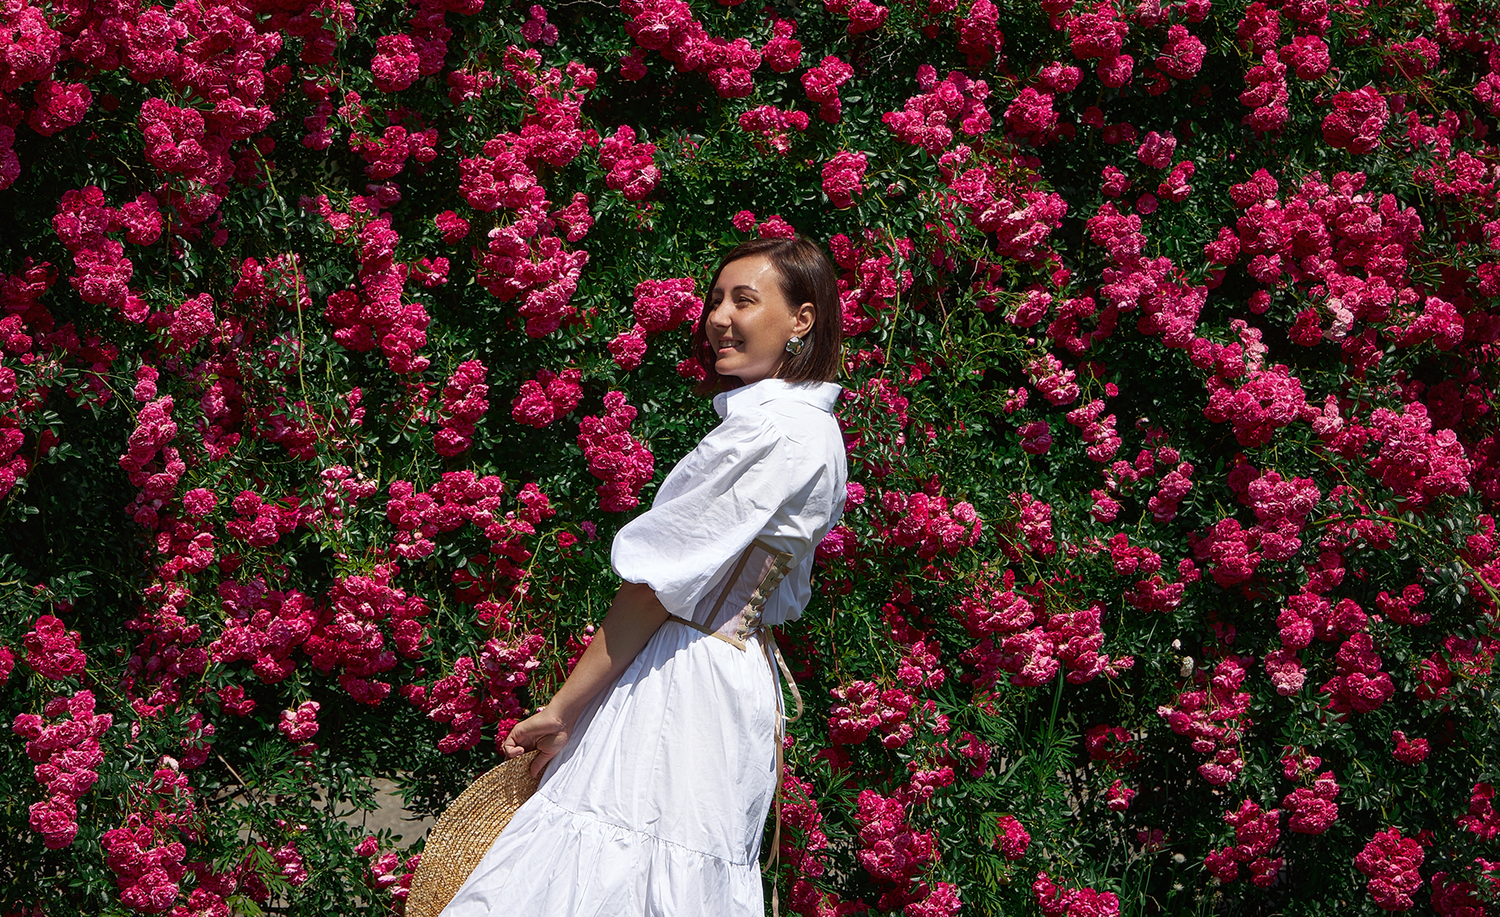 Femme portant une robe blanche et un corset se tenant devant un mur de roses